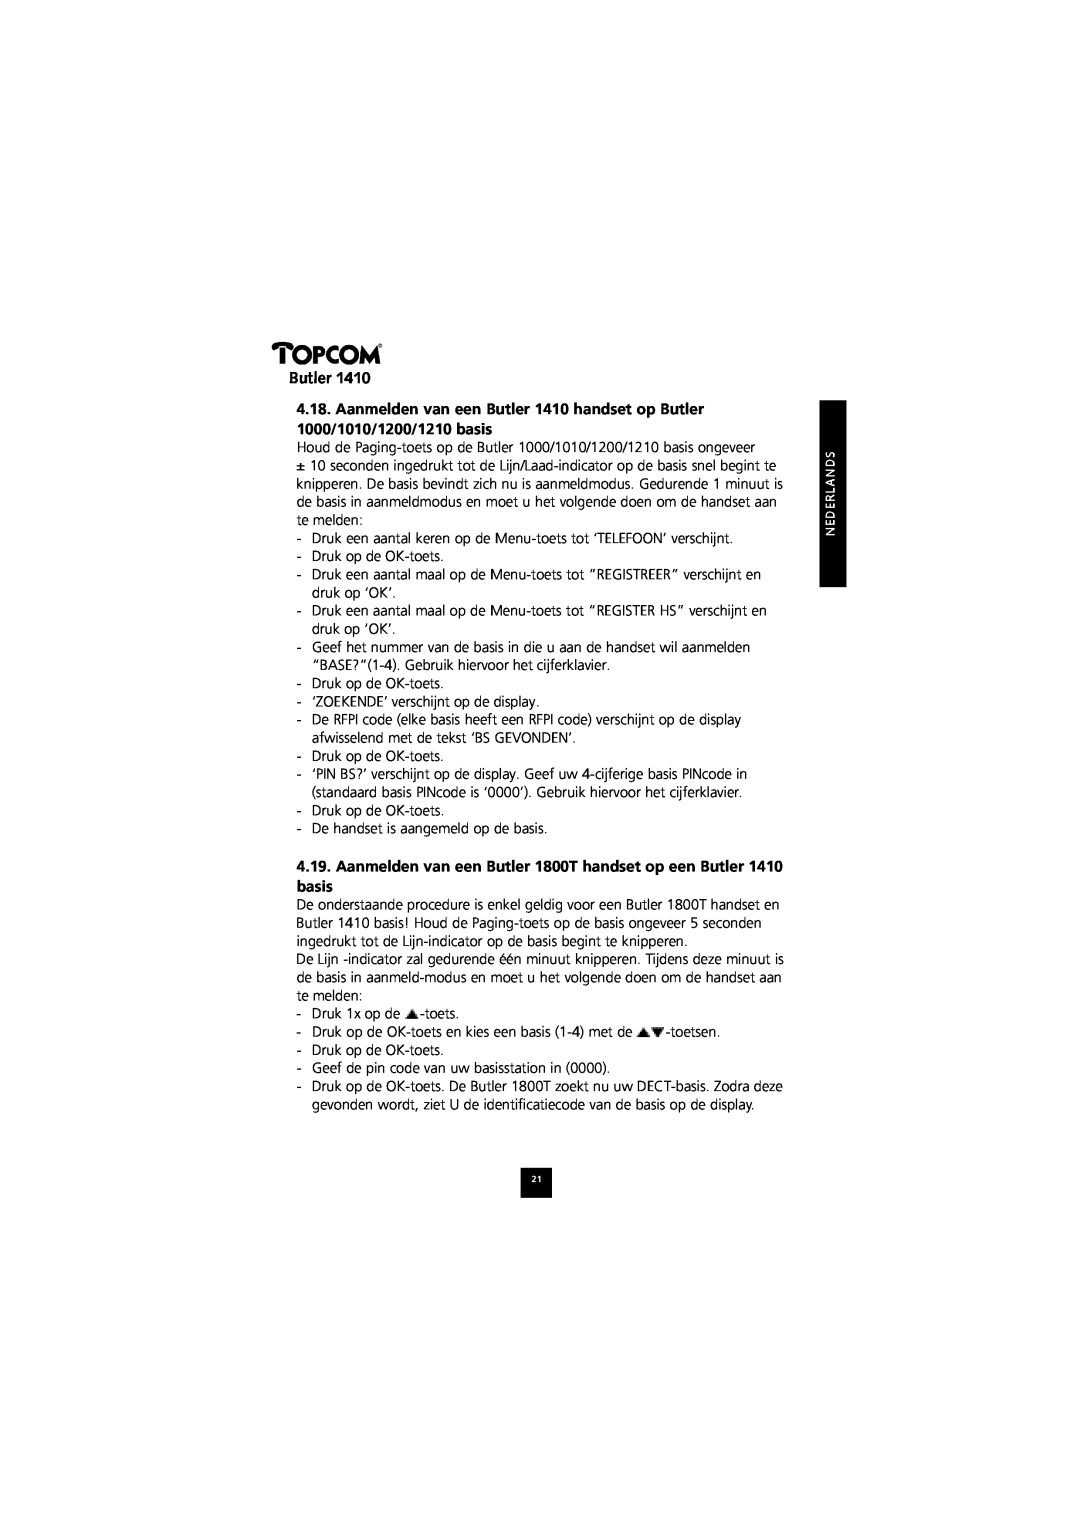 Topcom 1410 manual Aanmelden van een Butler 1800T handset op een Butler basis 